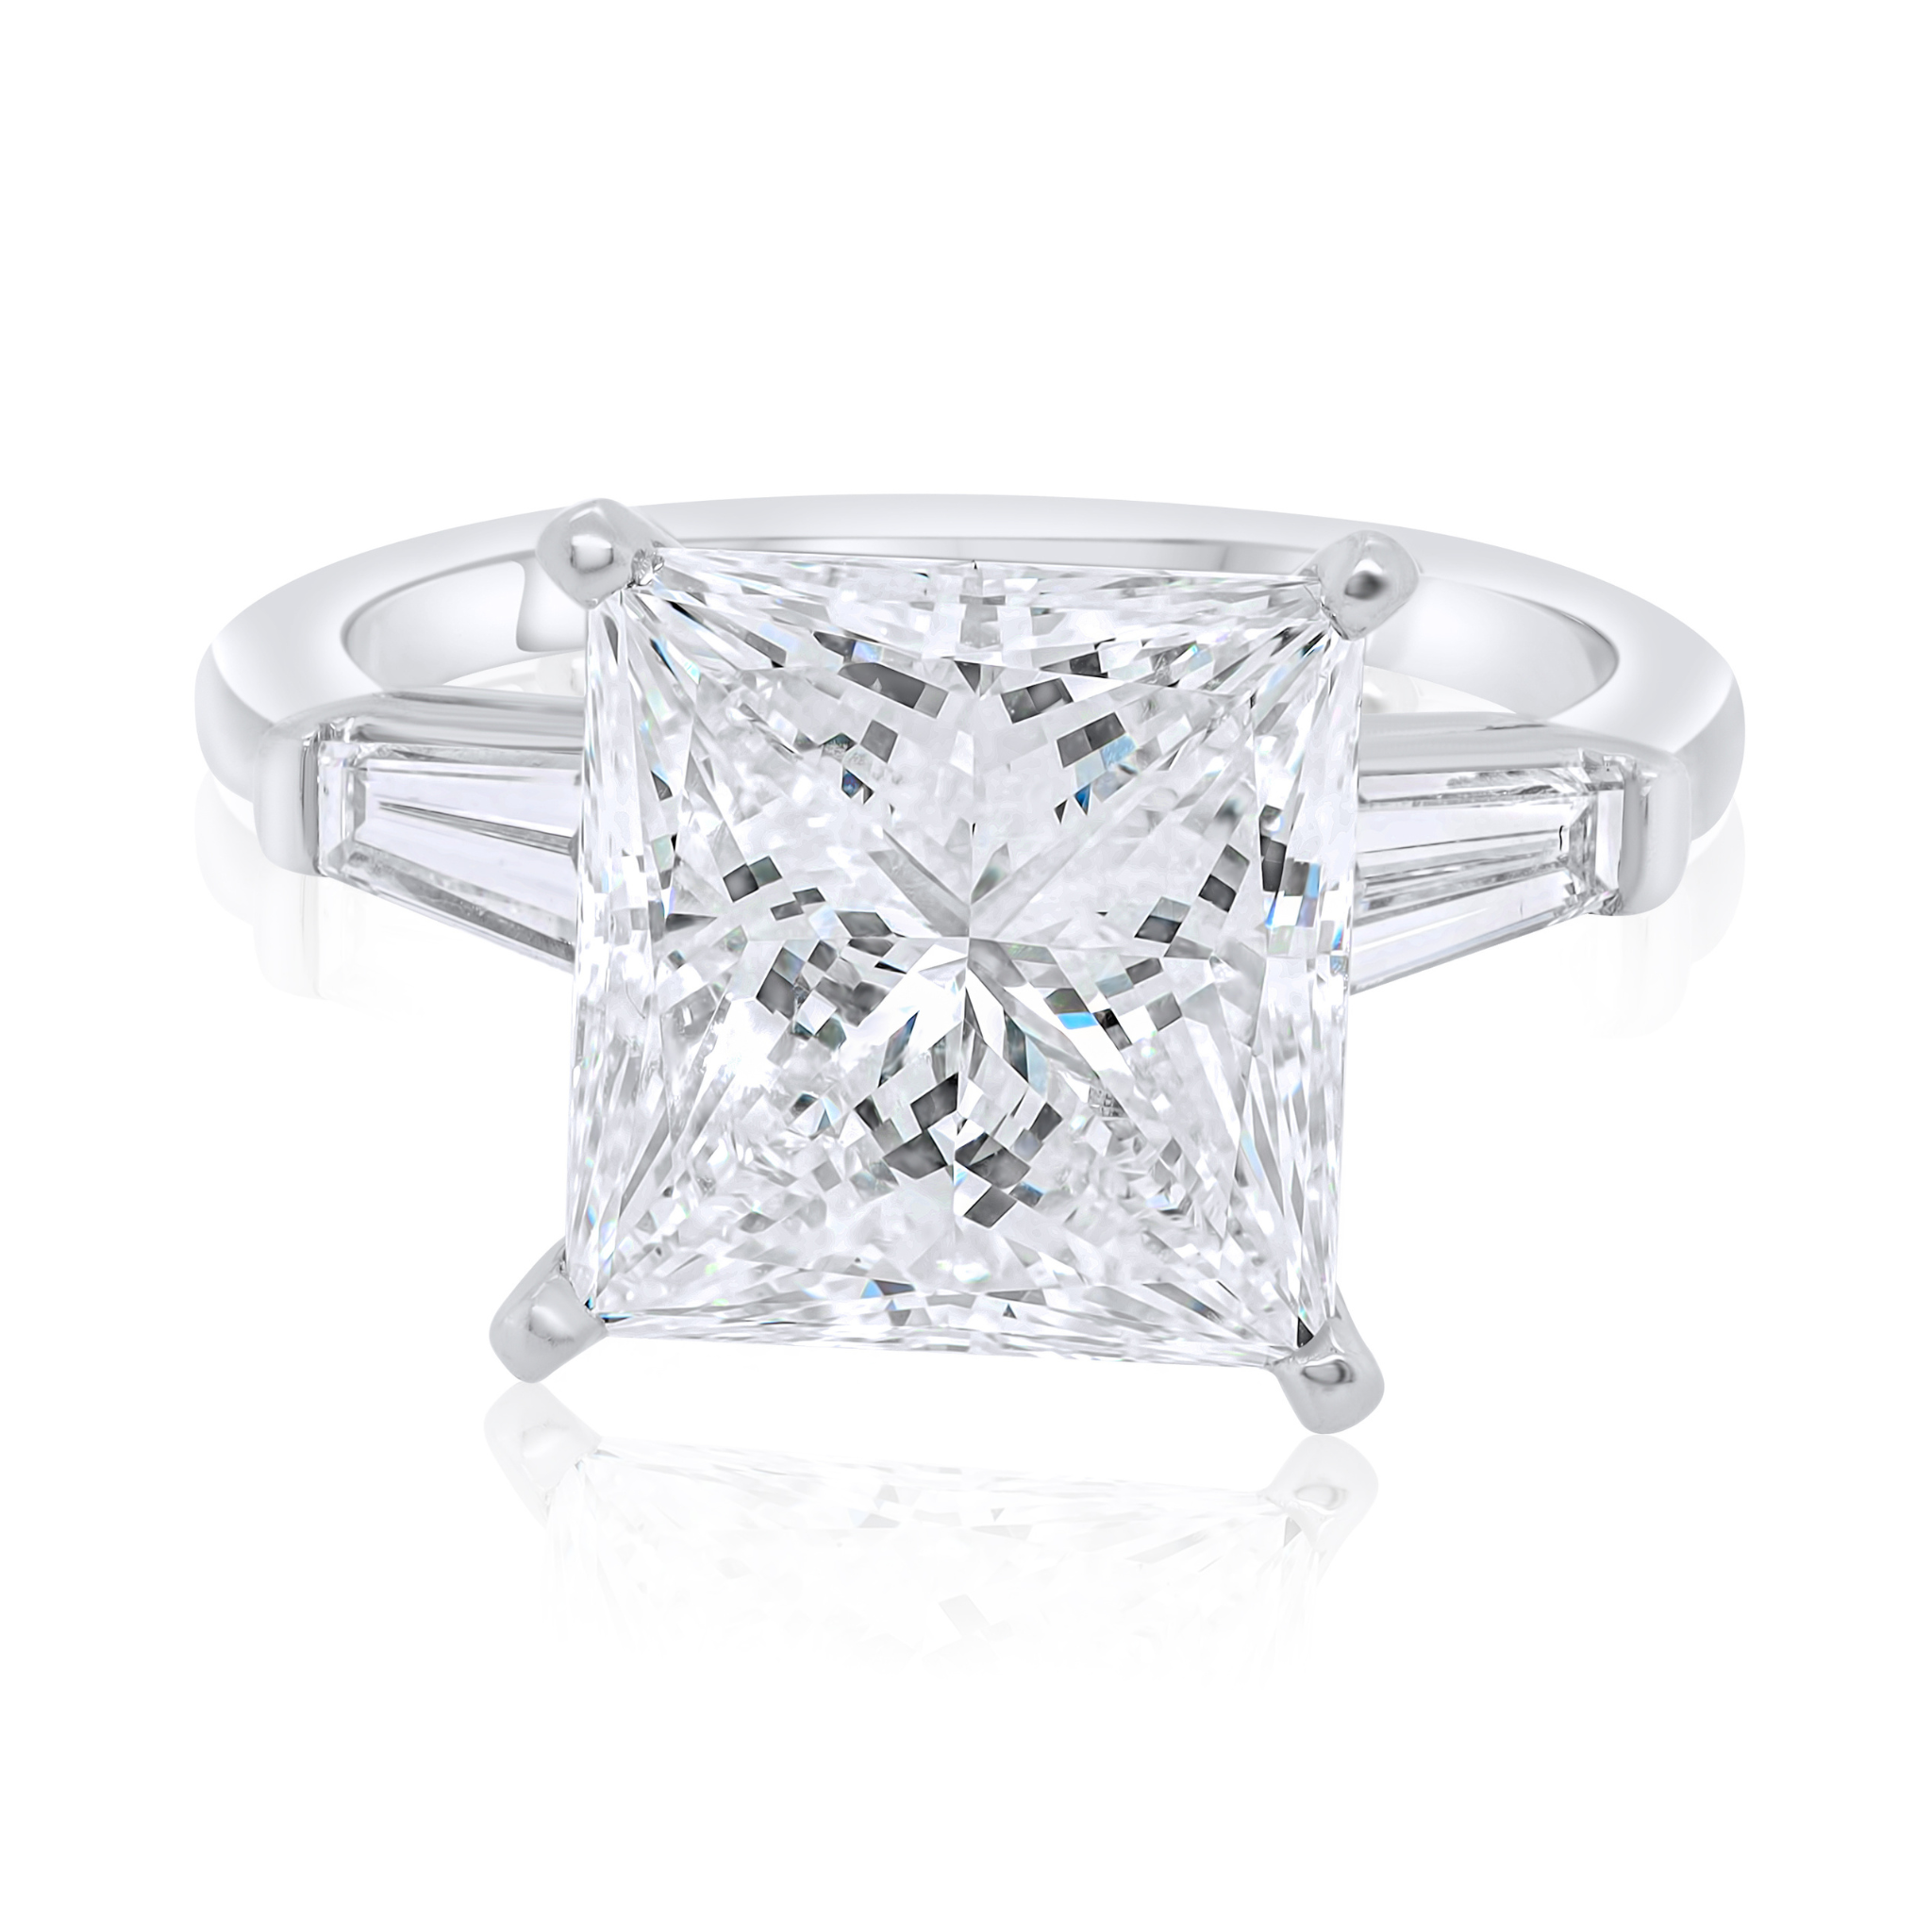 5.30ct Three-Stone Princess Cut Diamond Ring.jpg